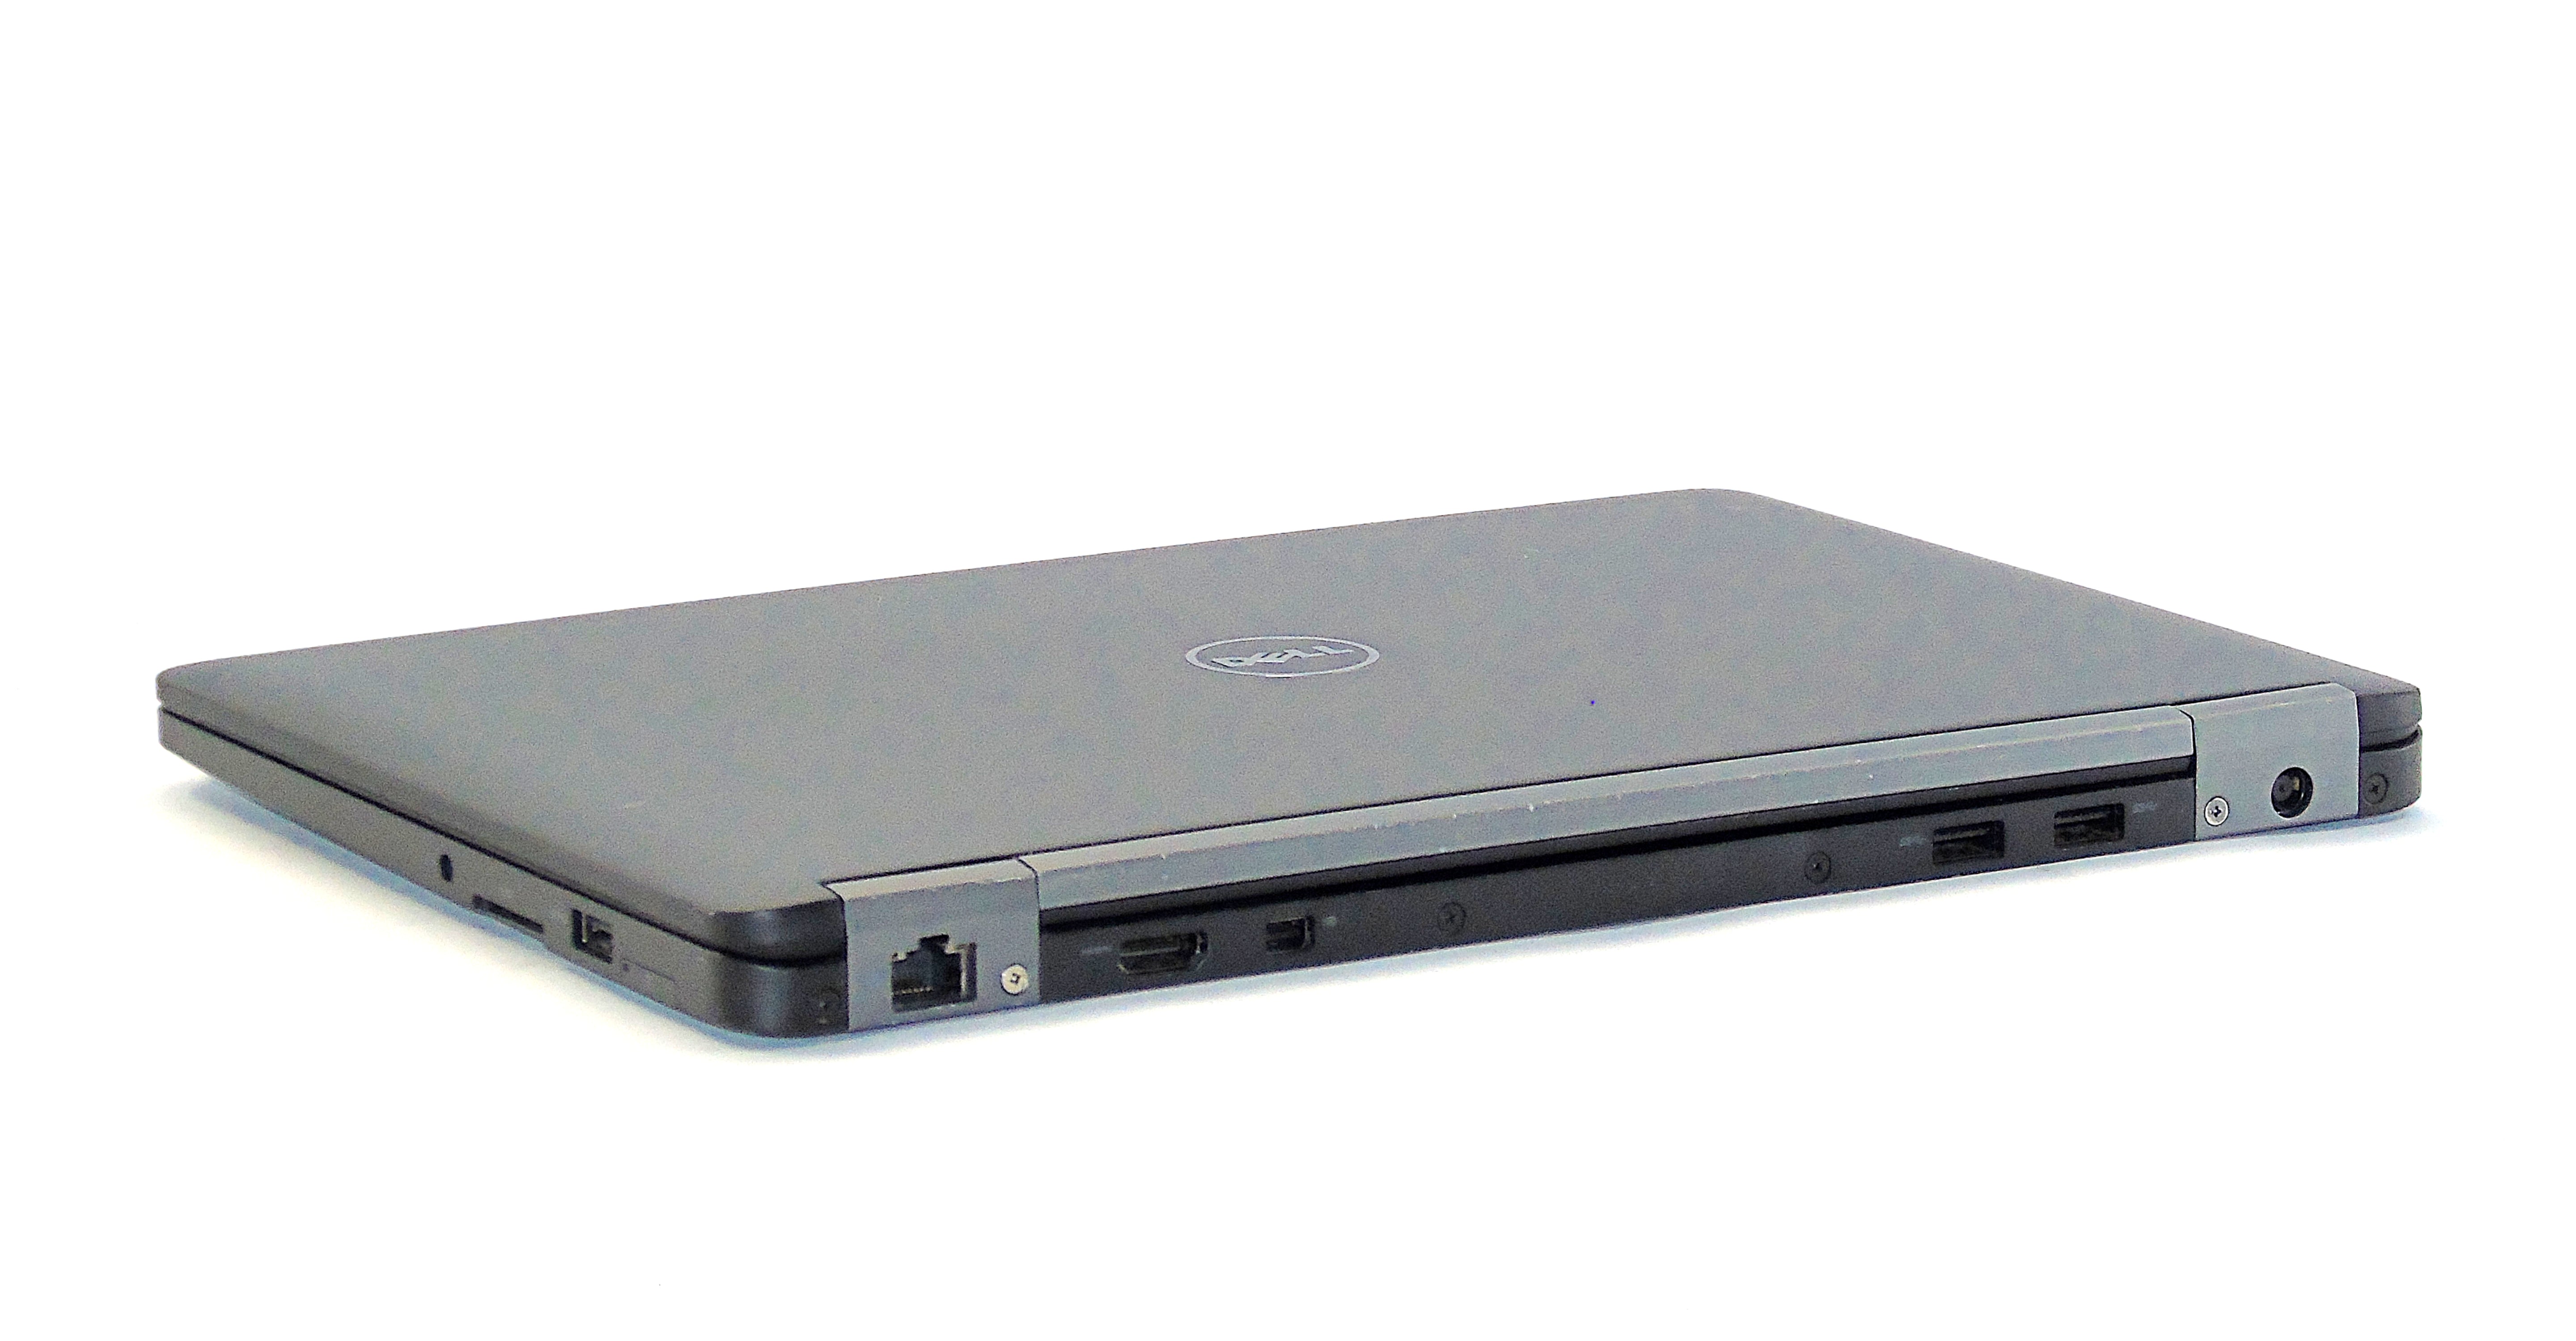 Dell Latitude E7270 Laptop, 12.5" i5 6th Gen, 8GB RAM, 256GB SSD